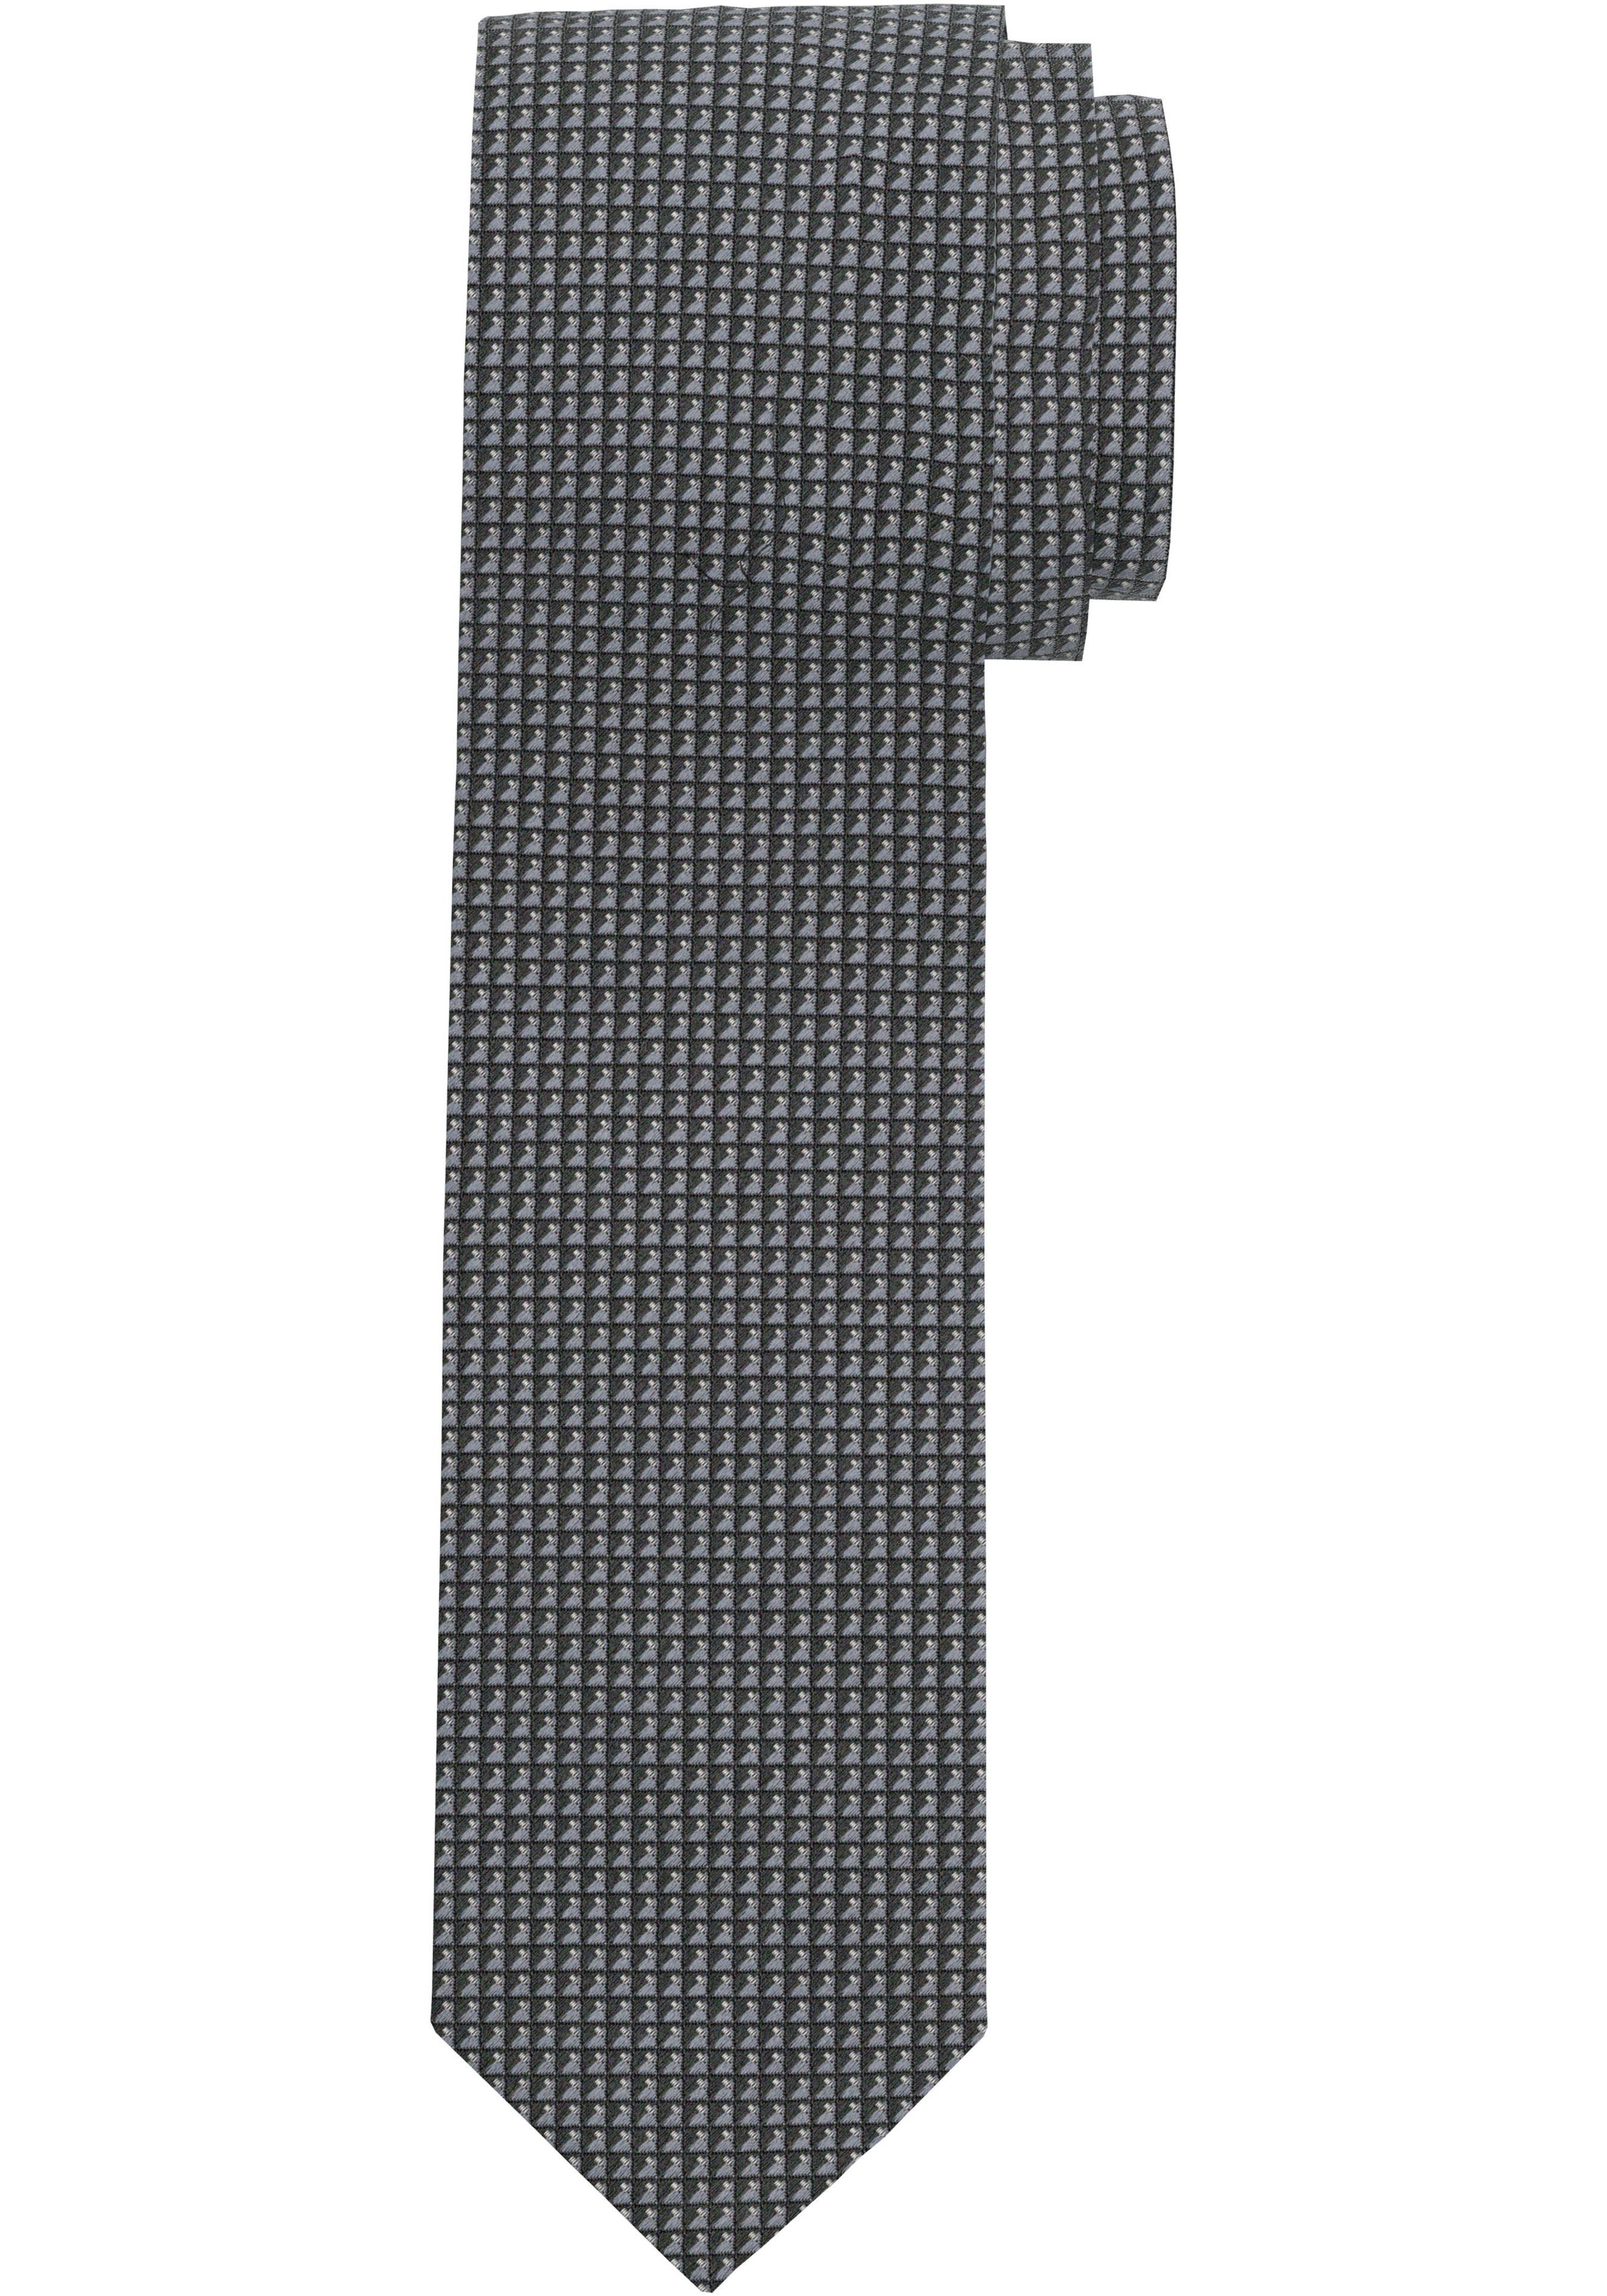 OLYMP Krawatte Strukturierte Krawatte, Wirksamer Schutz gegen Schmutz und  Flecken durch fleckabweisende Veredelung